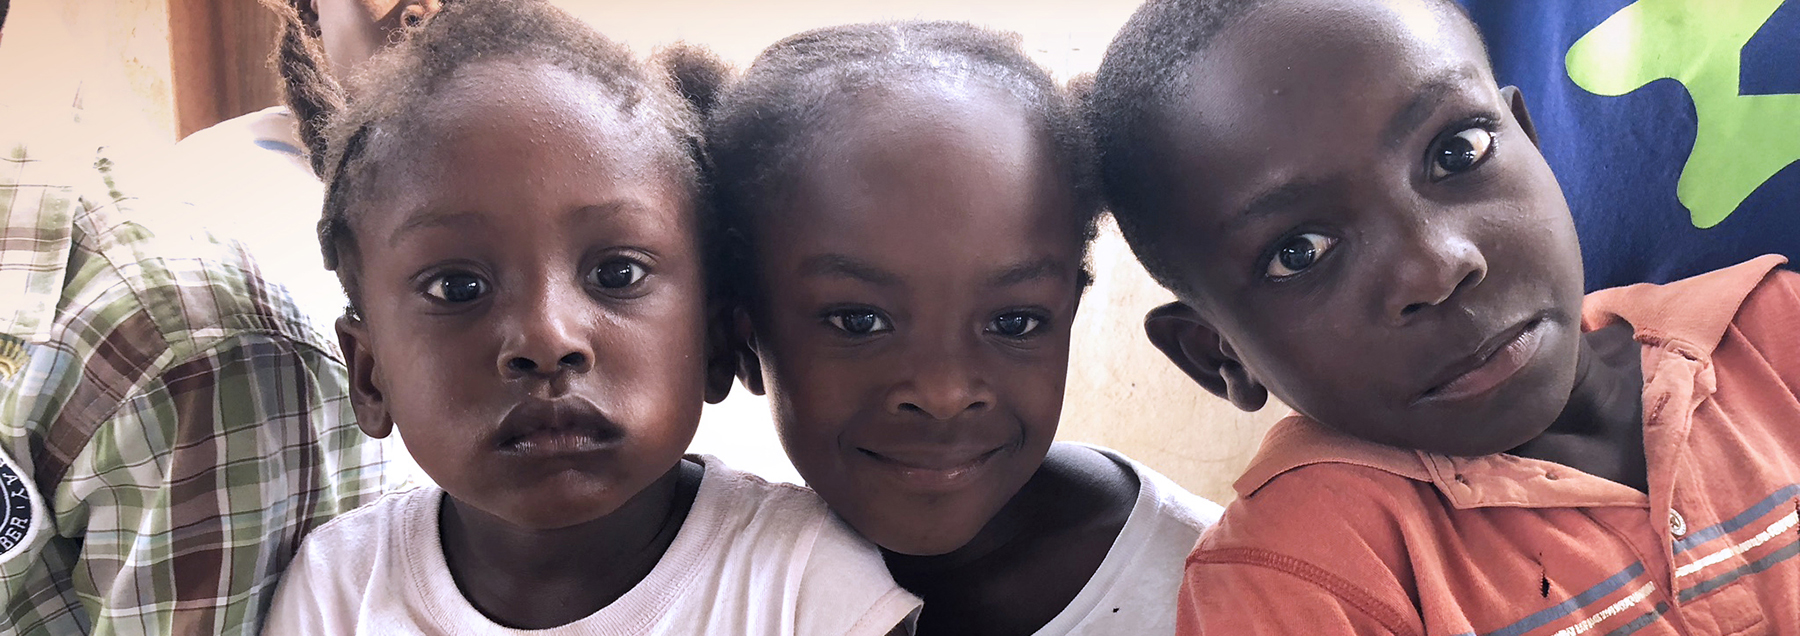 haiti-children-1.jpg